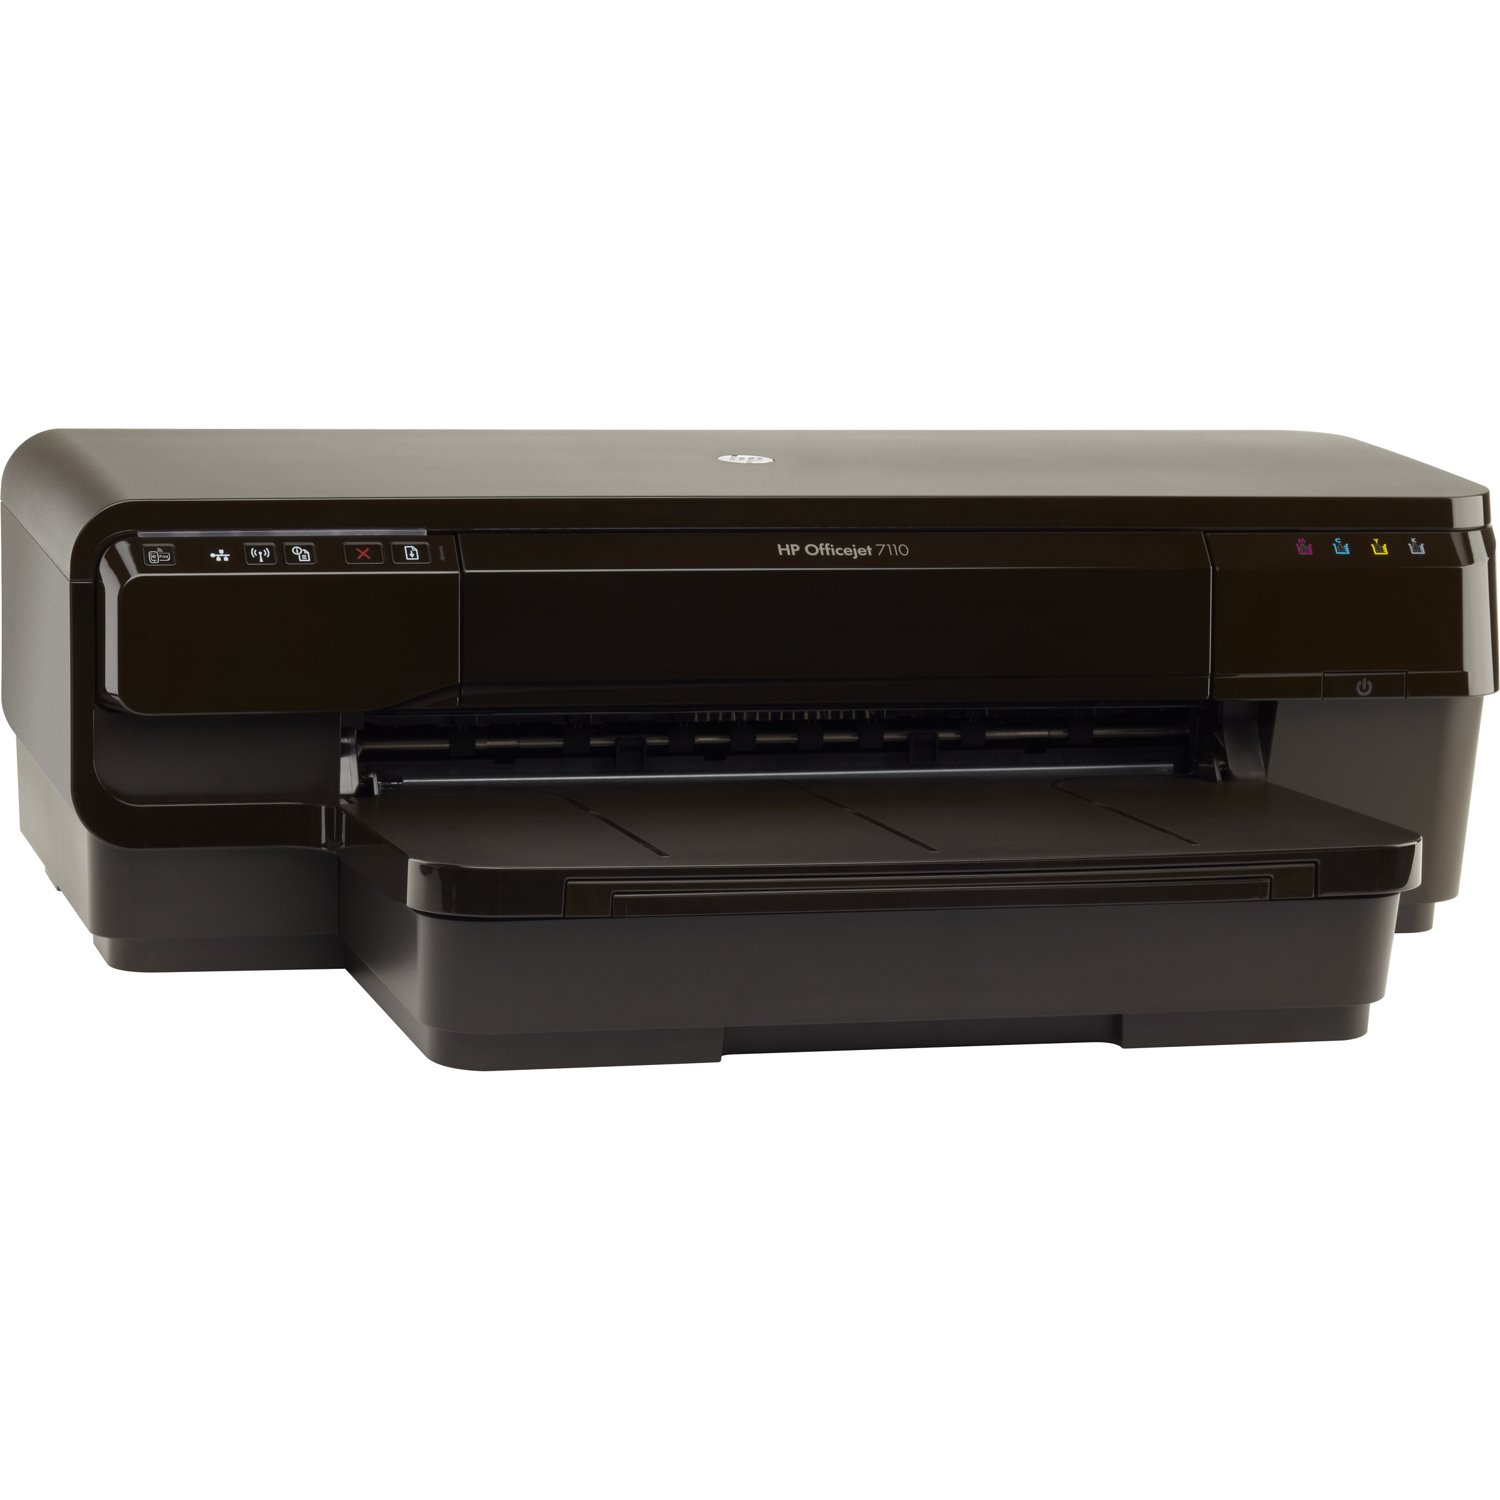 HP Officejet 7110 Desktop Inkjet Printer - Colour